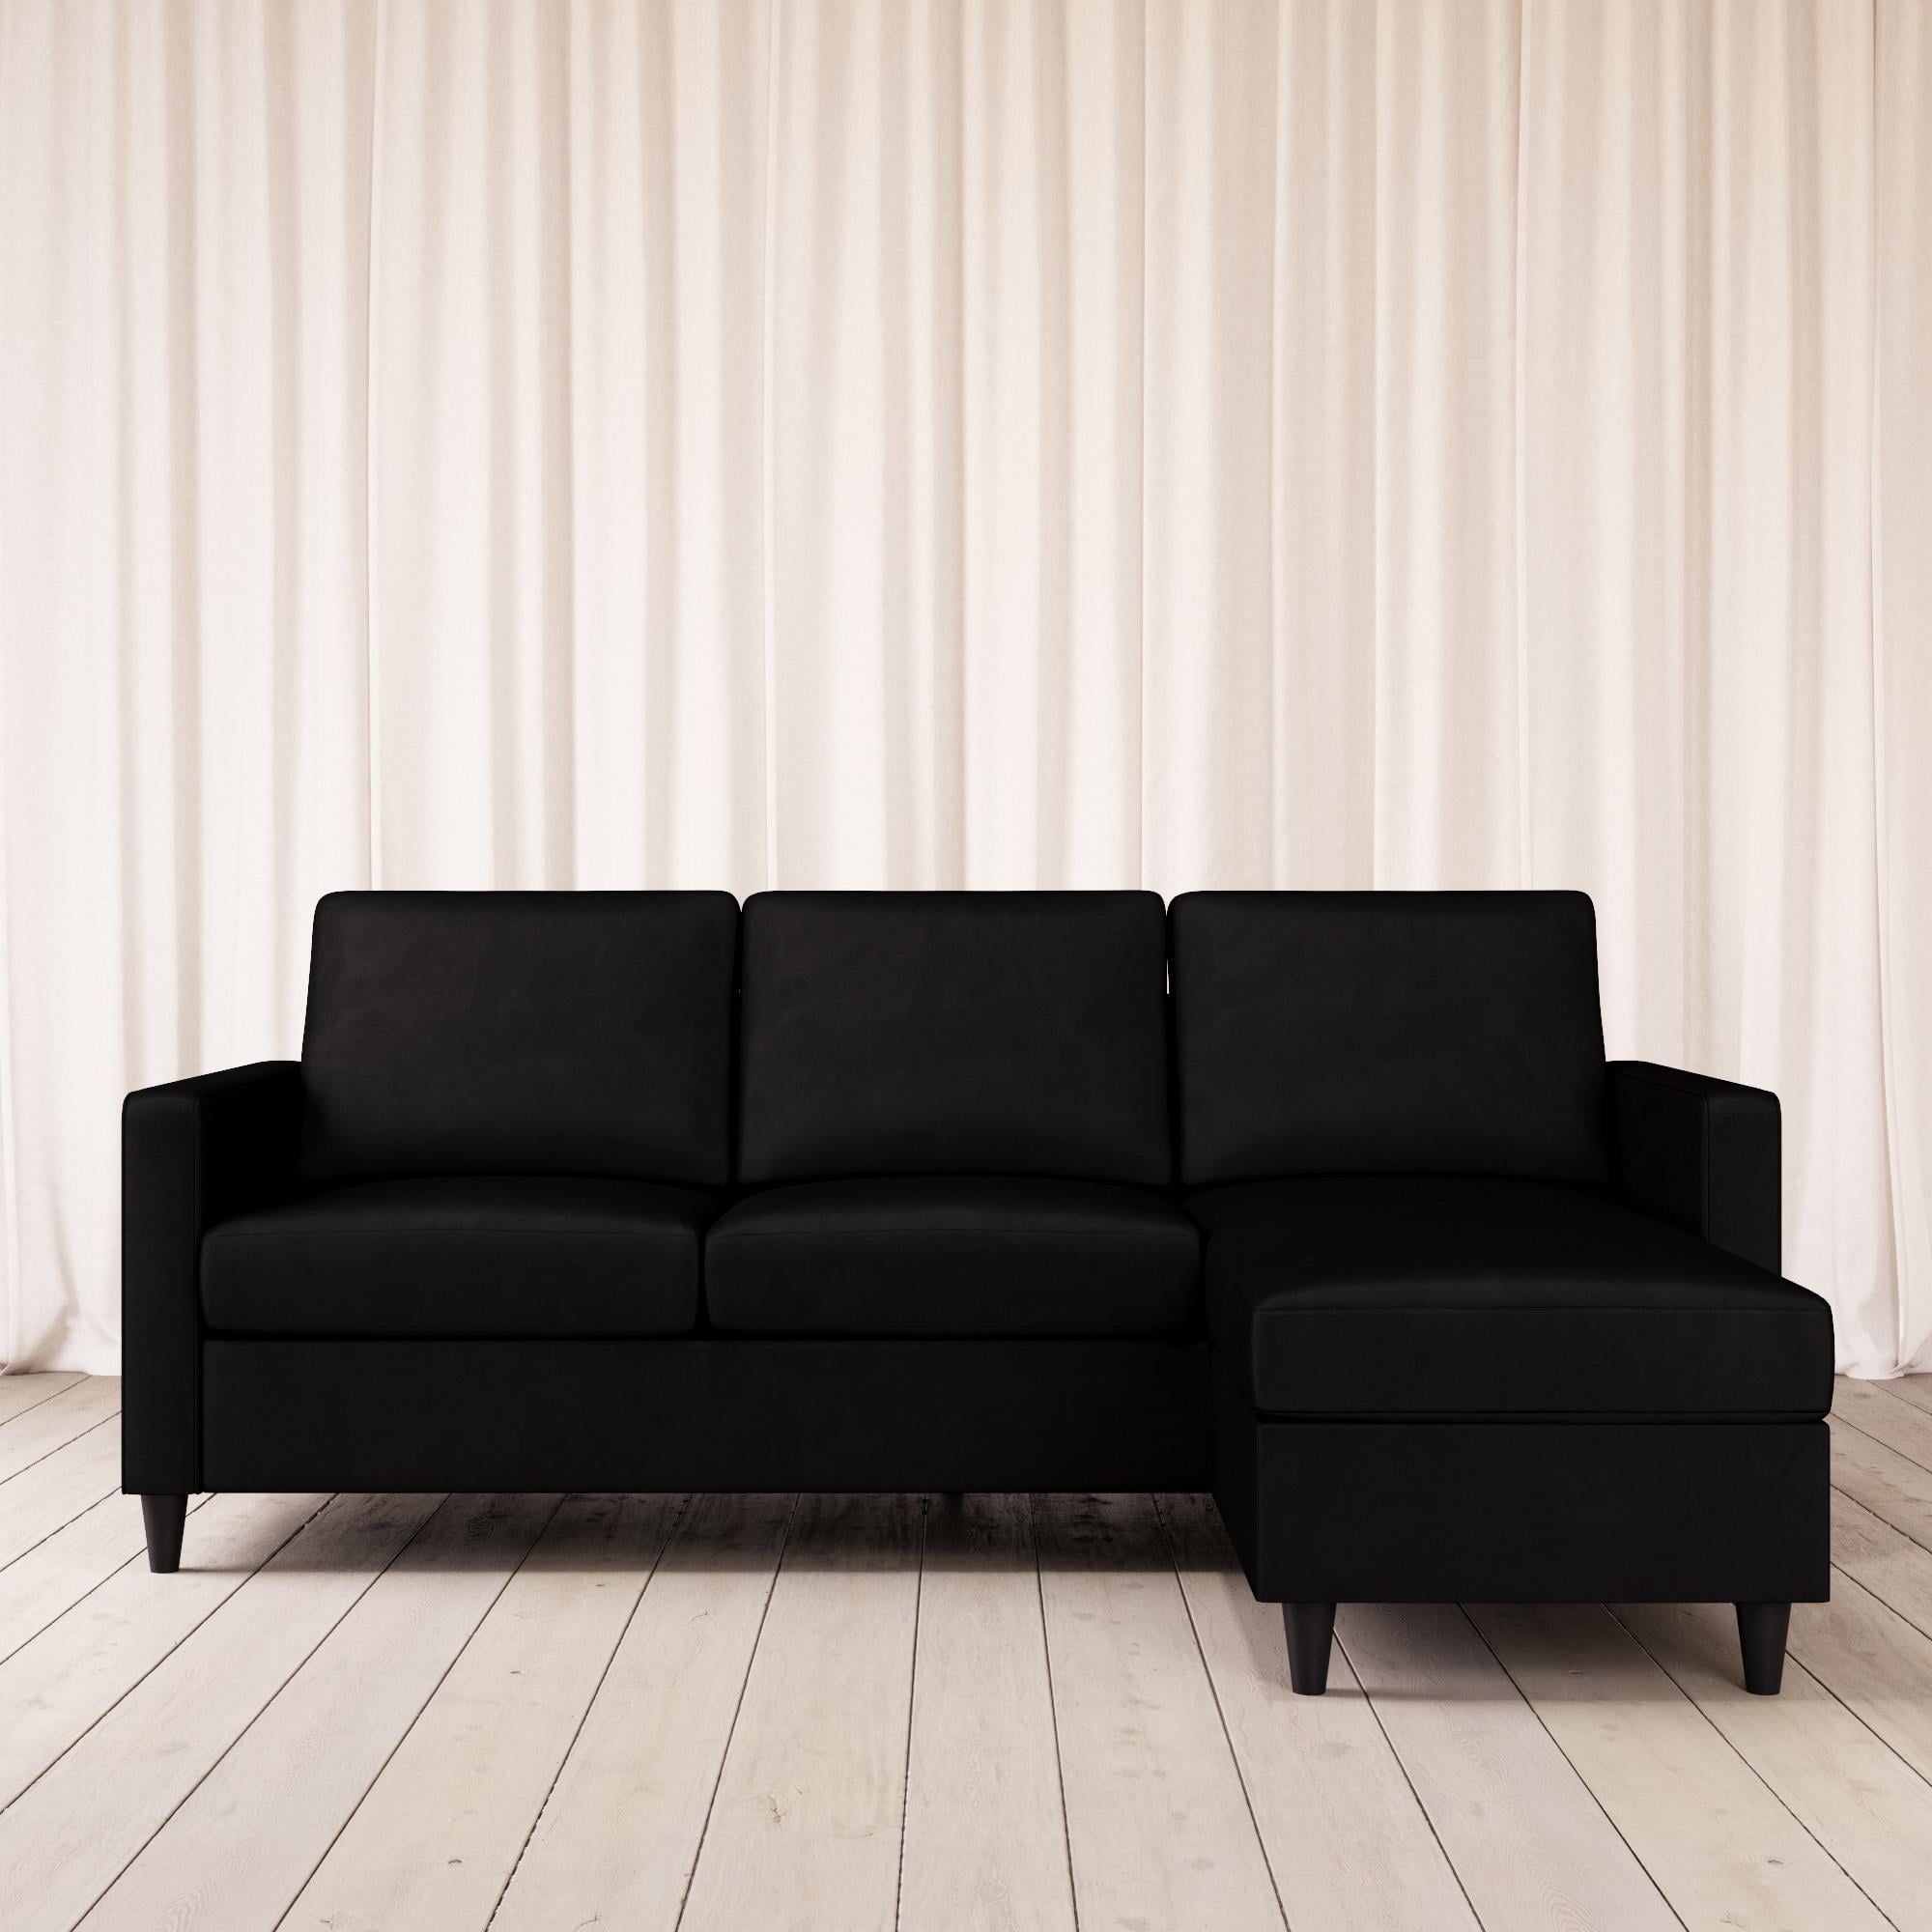 Dhp Cooper Modern Sectional Sofa, Black Velvet – Walmart – Walmart Within Black Velvet 2 Seater Sofa Beds (View 11 of 20)